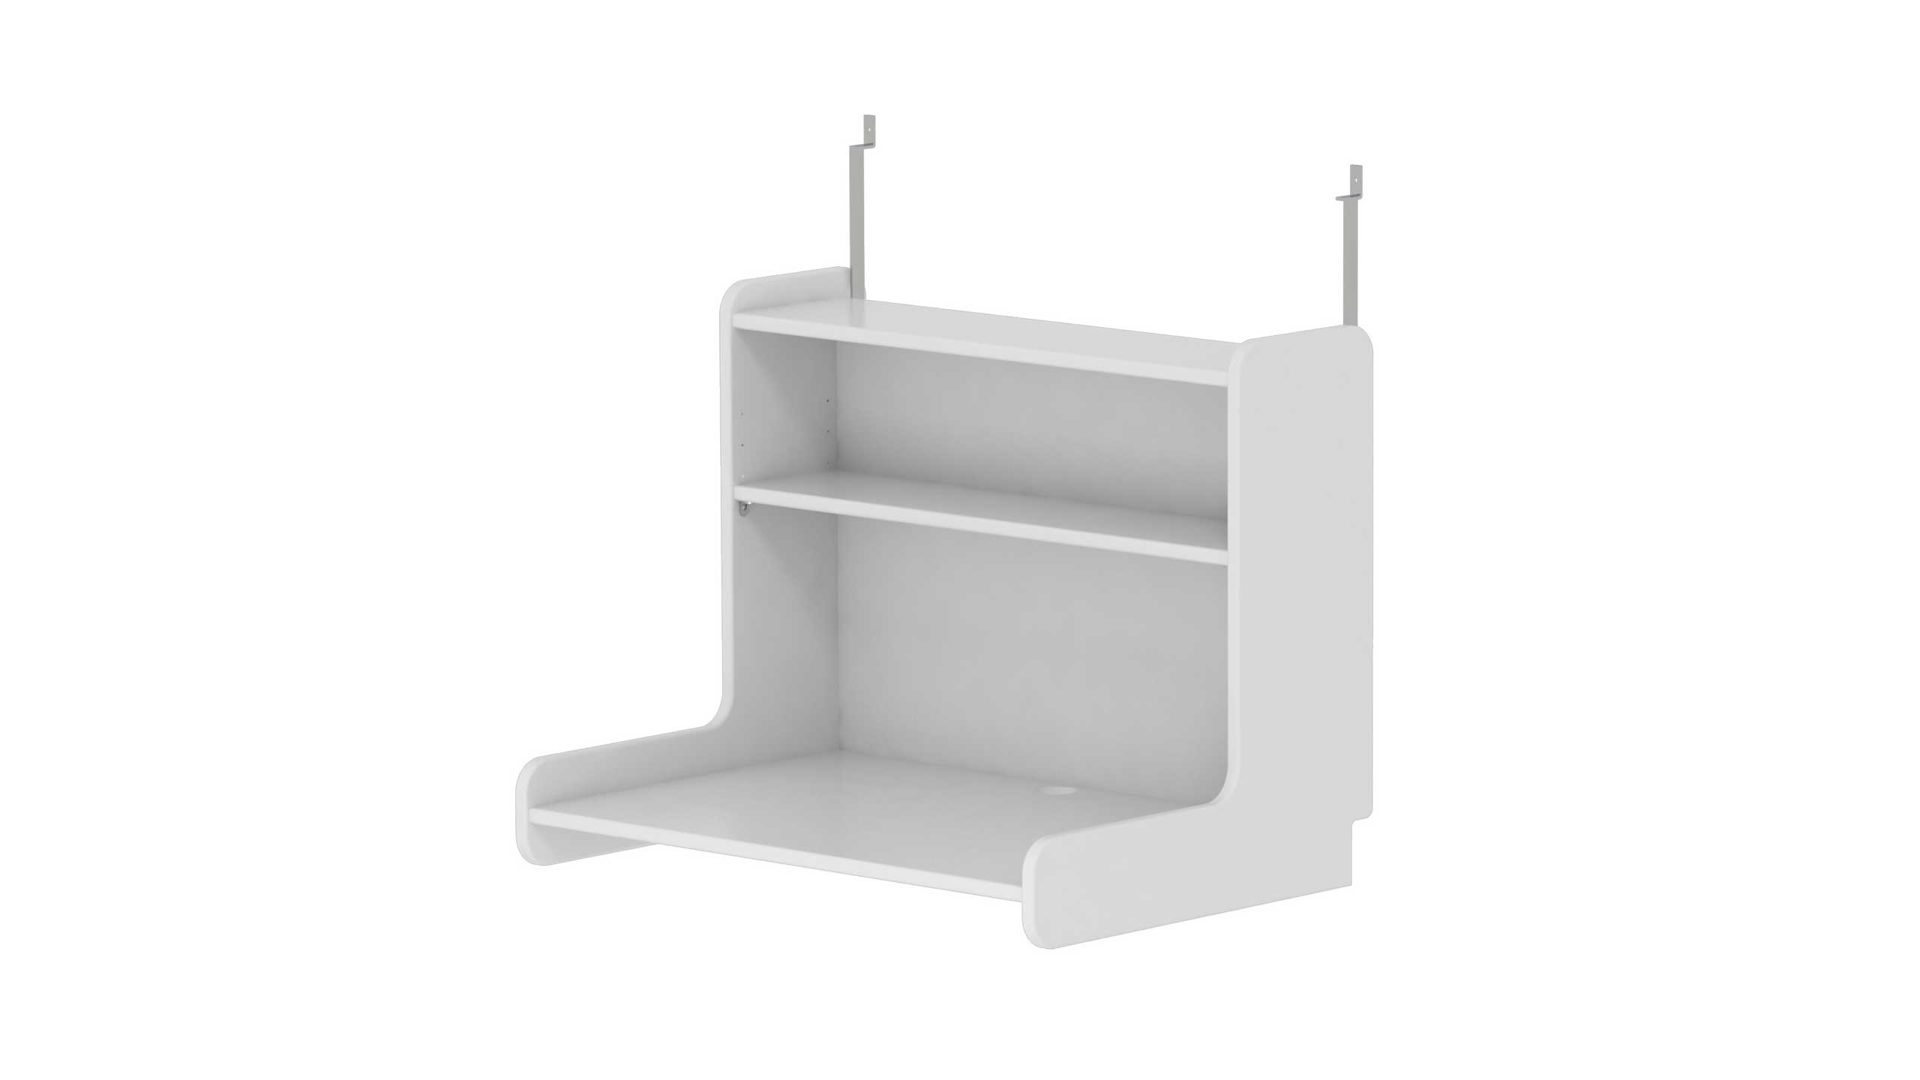 Tischplatte Flexa aus Holz in Weiß FLEXA ClickOn Hängeschreibtisch  für White Hochbetten, weiße Lackoberflächen – Höhe ca. 56 cm